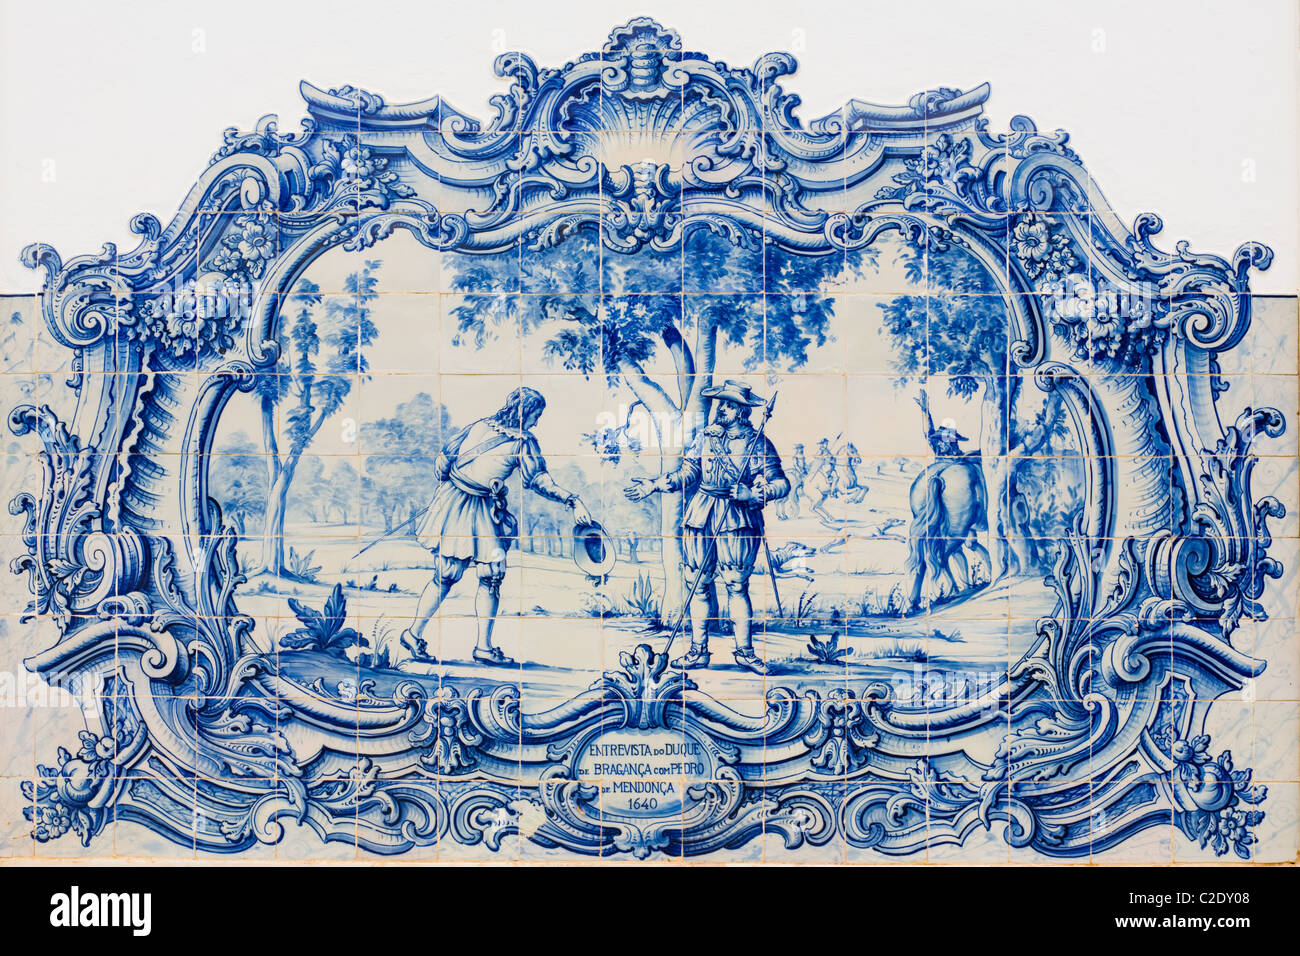 Il duca di Bragança storia illustrata in piastrelle (azulejos) al Museo del Marmo, Vila Viçosa, Portogallo Foto Stock